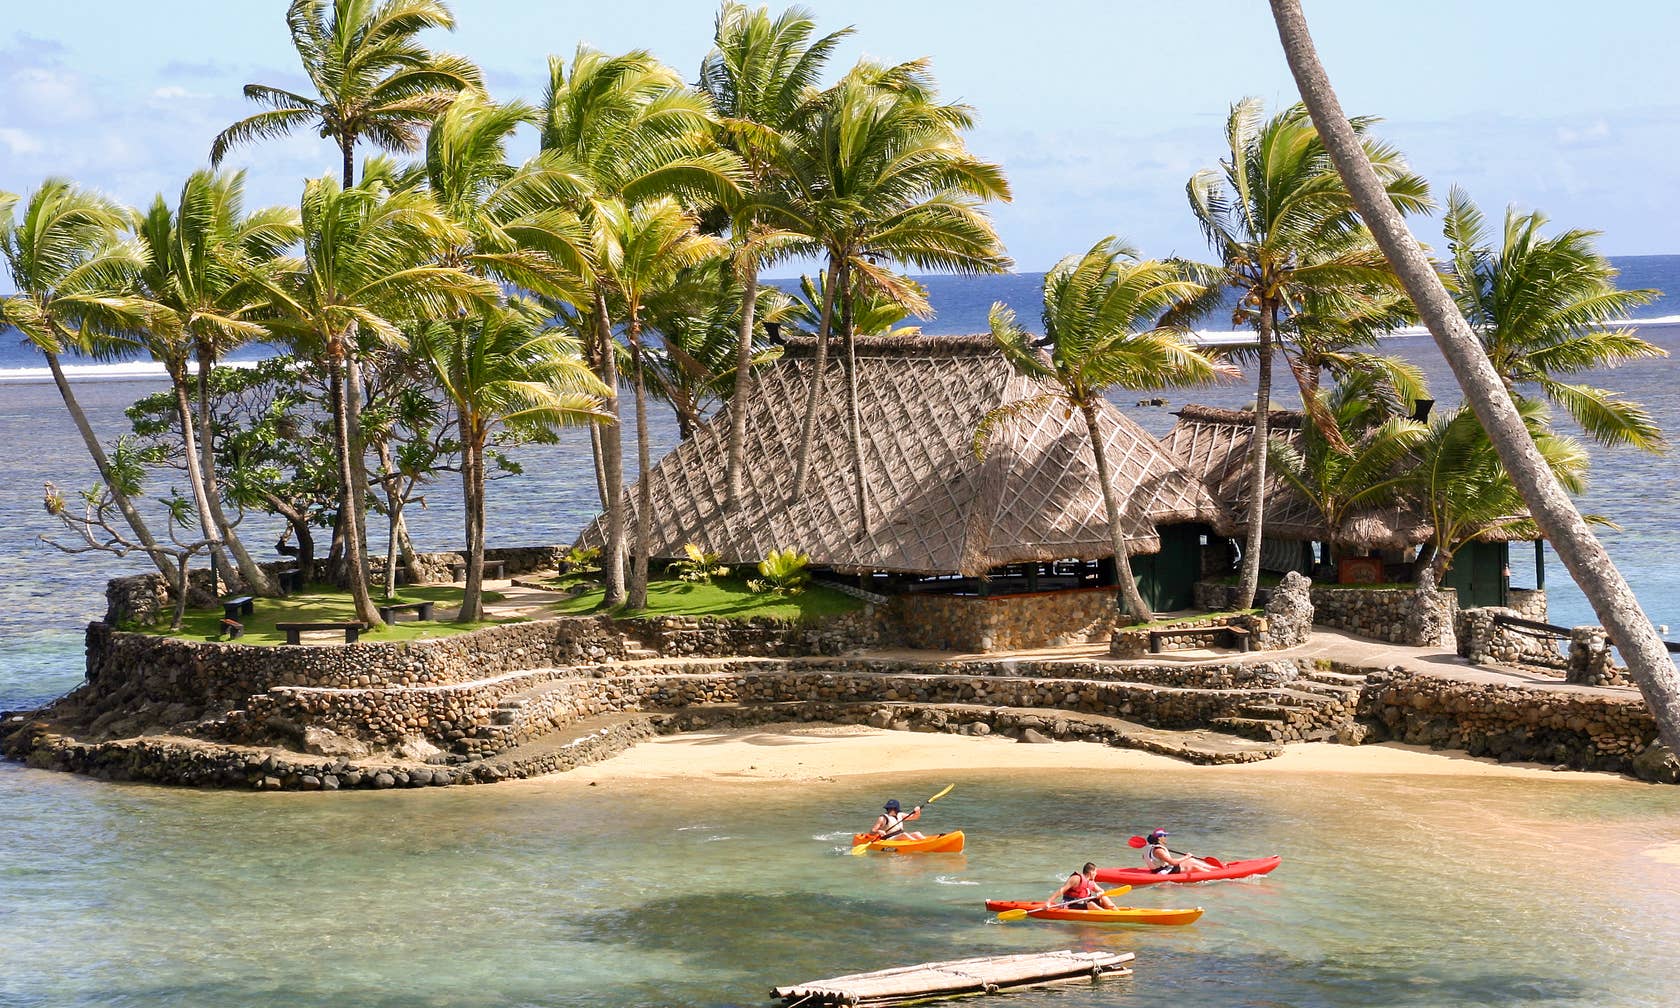 Bérbeadó nyaralók itt: Fidzsi